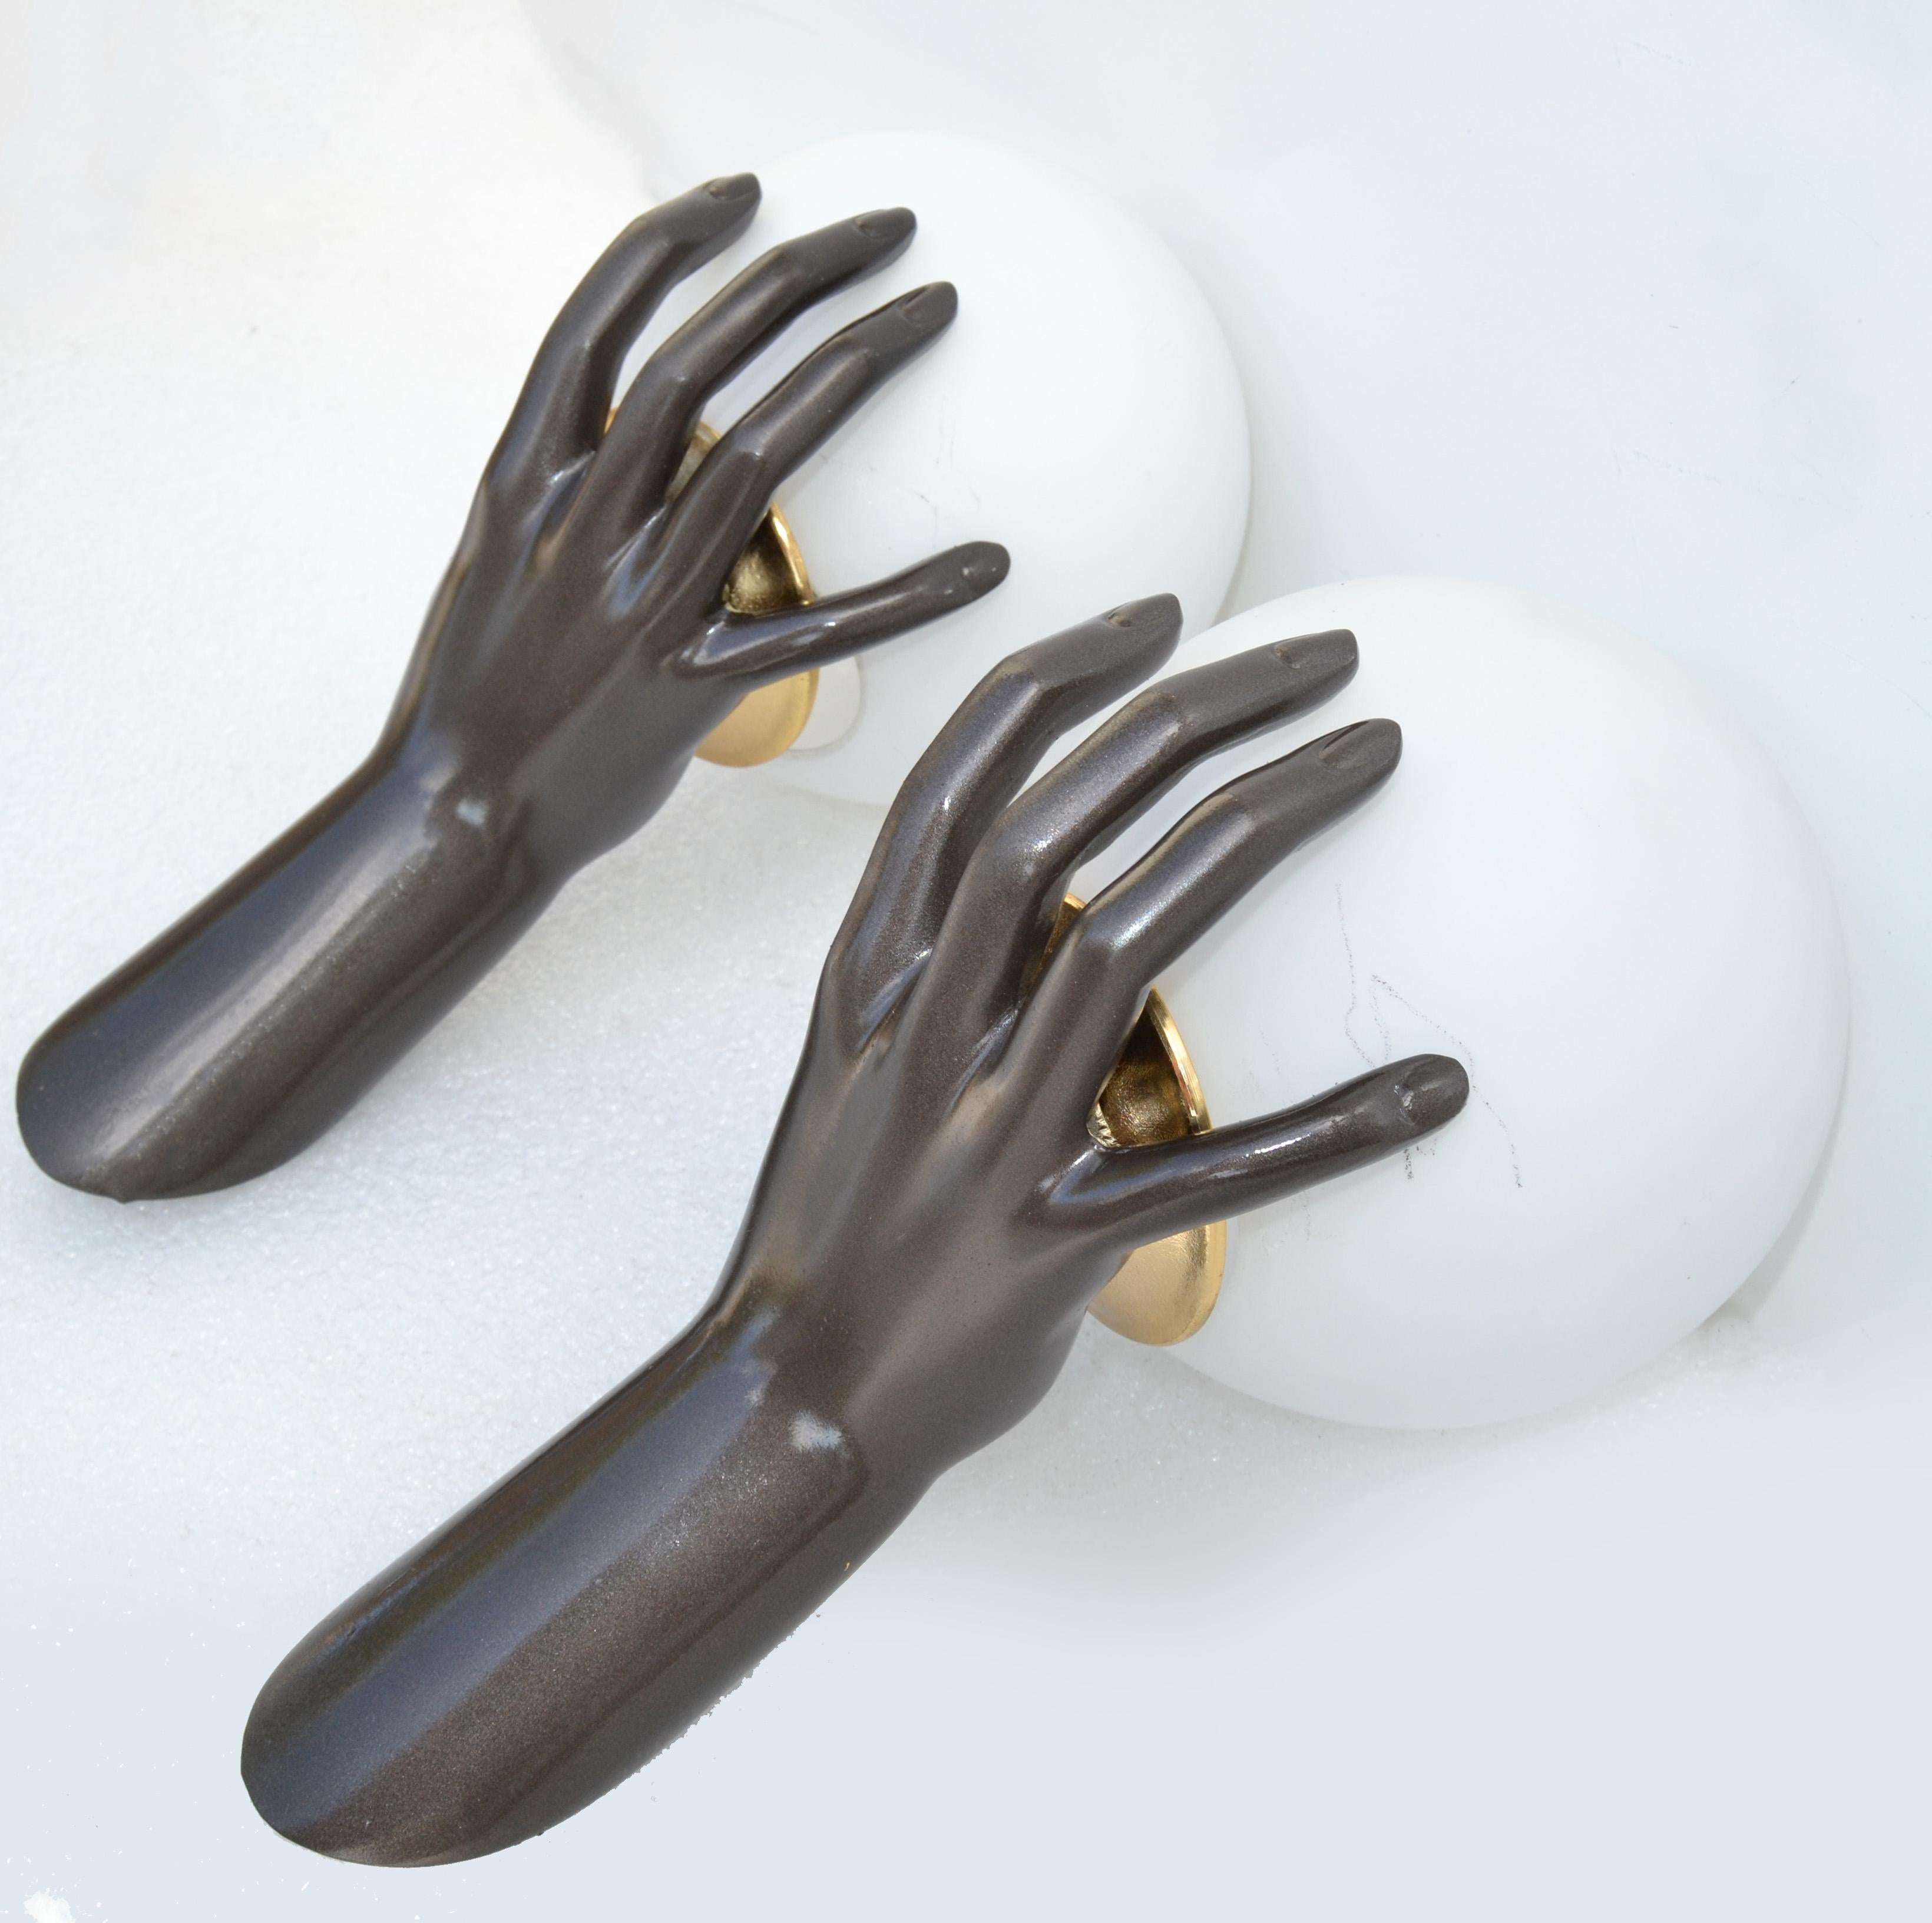 Hervorragendes Paar bronzefarbener Wandleuchter von Maison Arlus. Modellnummer 1436, mit einer bronzenen Hand, die einen beleuchteten Opalin-Globus hält.
US neu verkabelt und funktionstüchtig jeder Zeiger nimmt eine Glühbirne auf, max. 60 Watt.